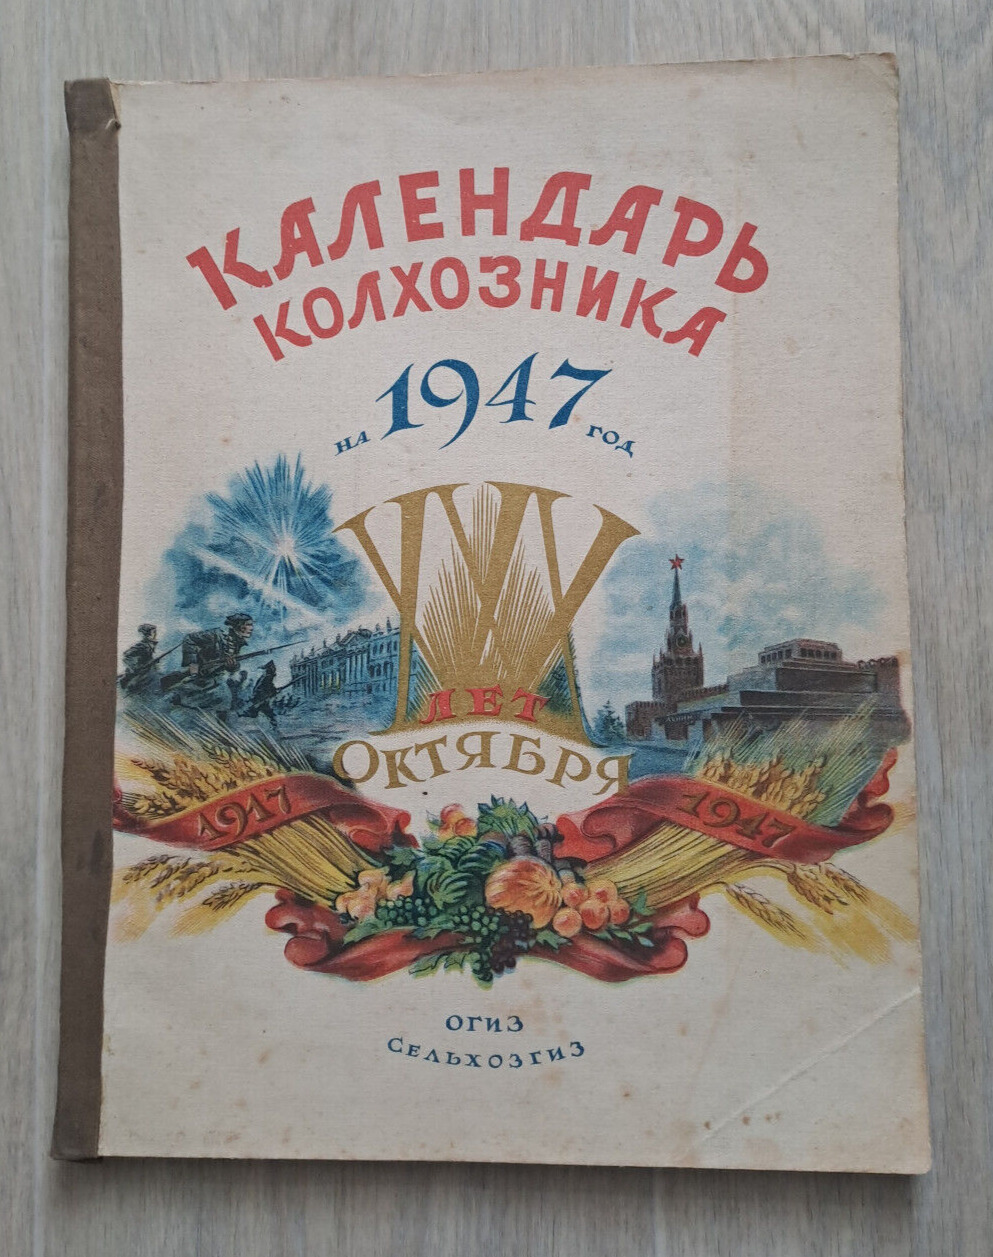 1947 Calendar of collective farmer Stalin era Communism rare Soviet Russian book